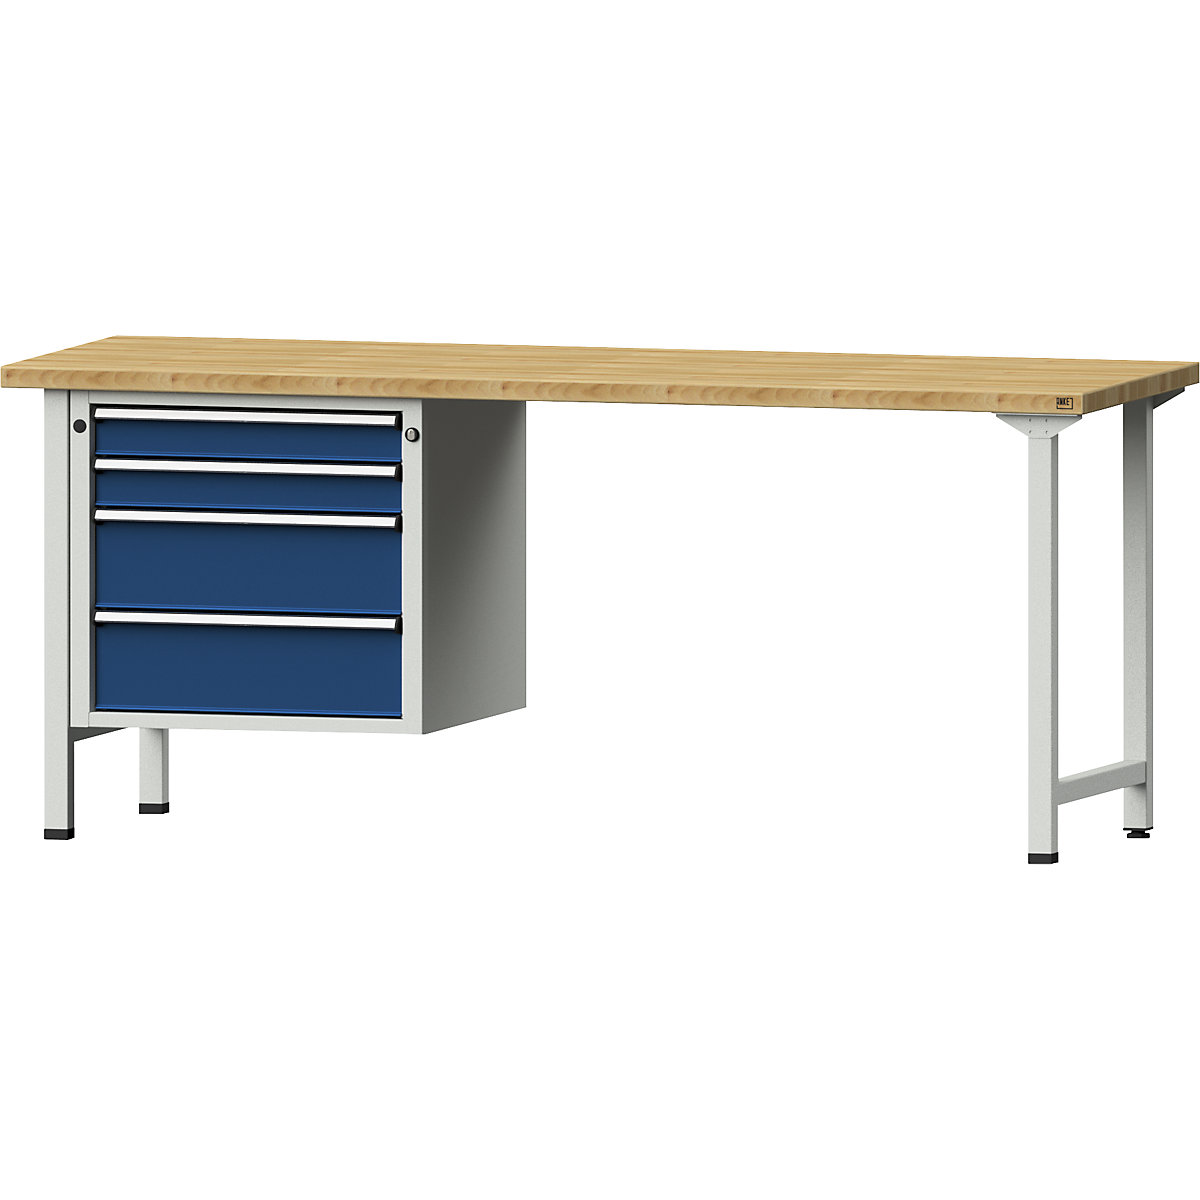 Dílenský stůl s rámovou konstrukcí – ANKE, 2 zásuvky 90 mm, 2 zásuvky 180 mm, deska z bukového masivu, šířka 2000 mm-9